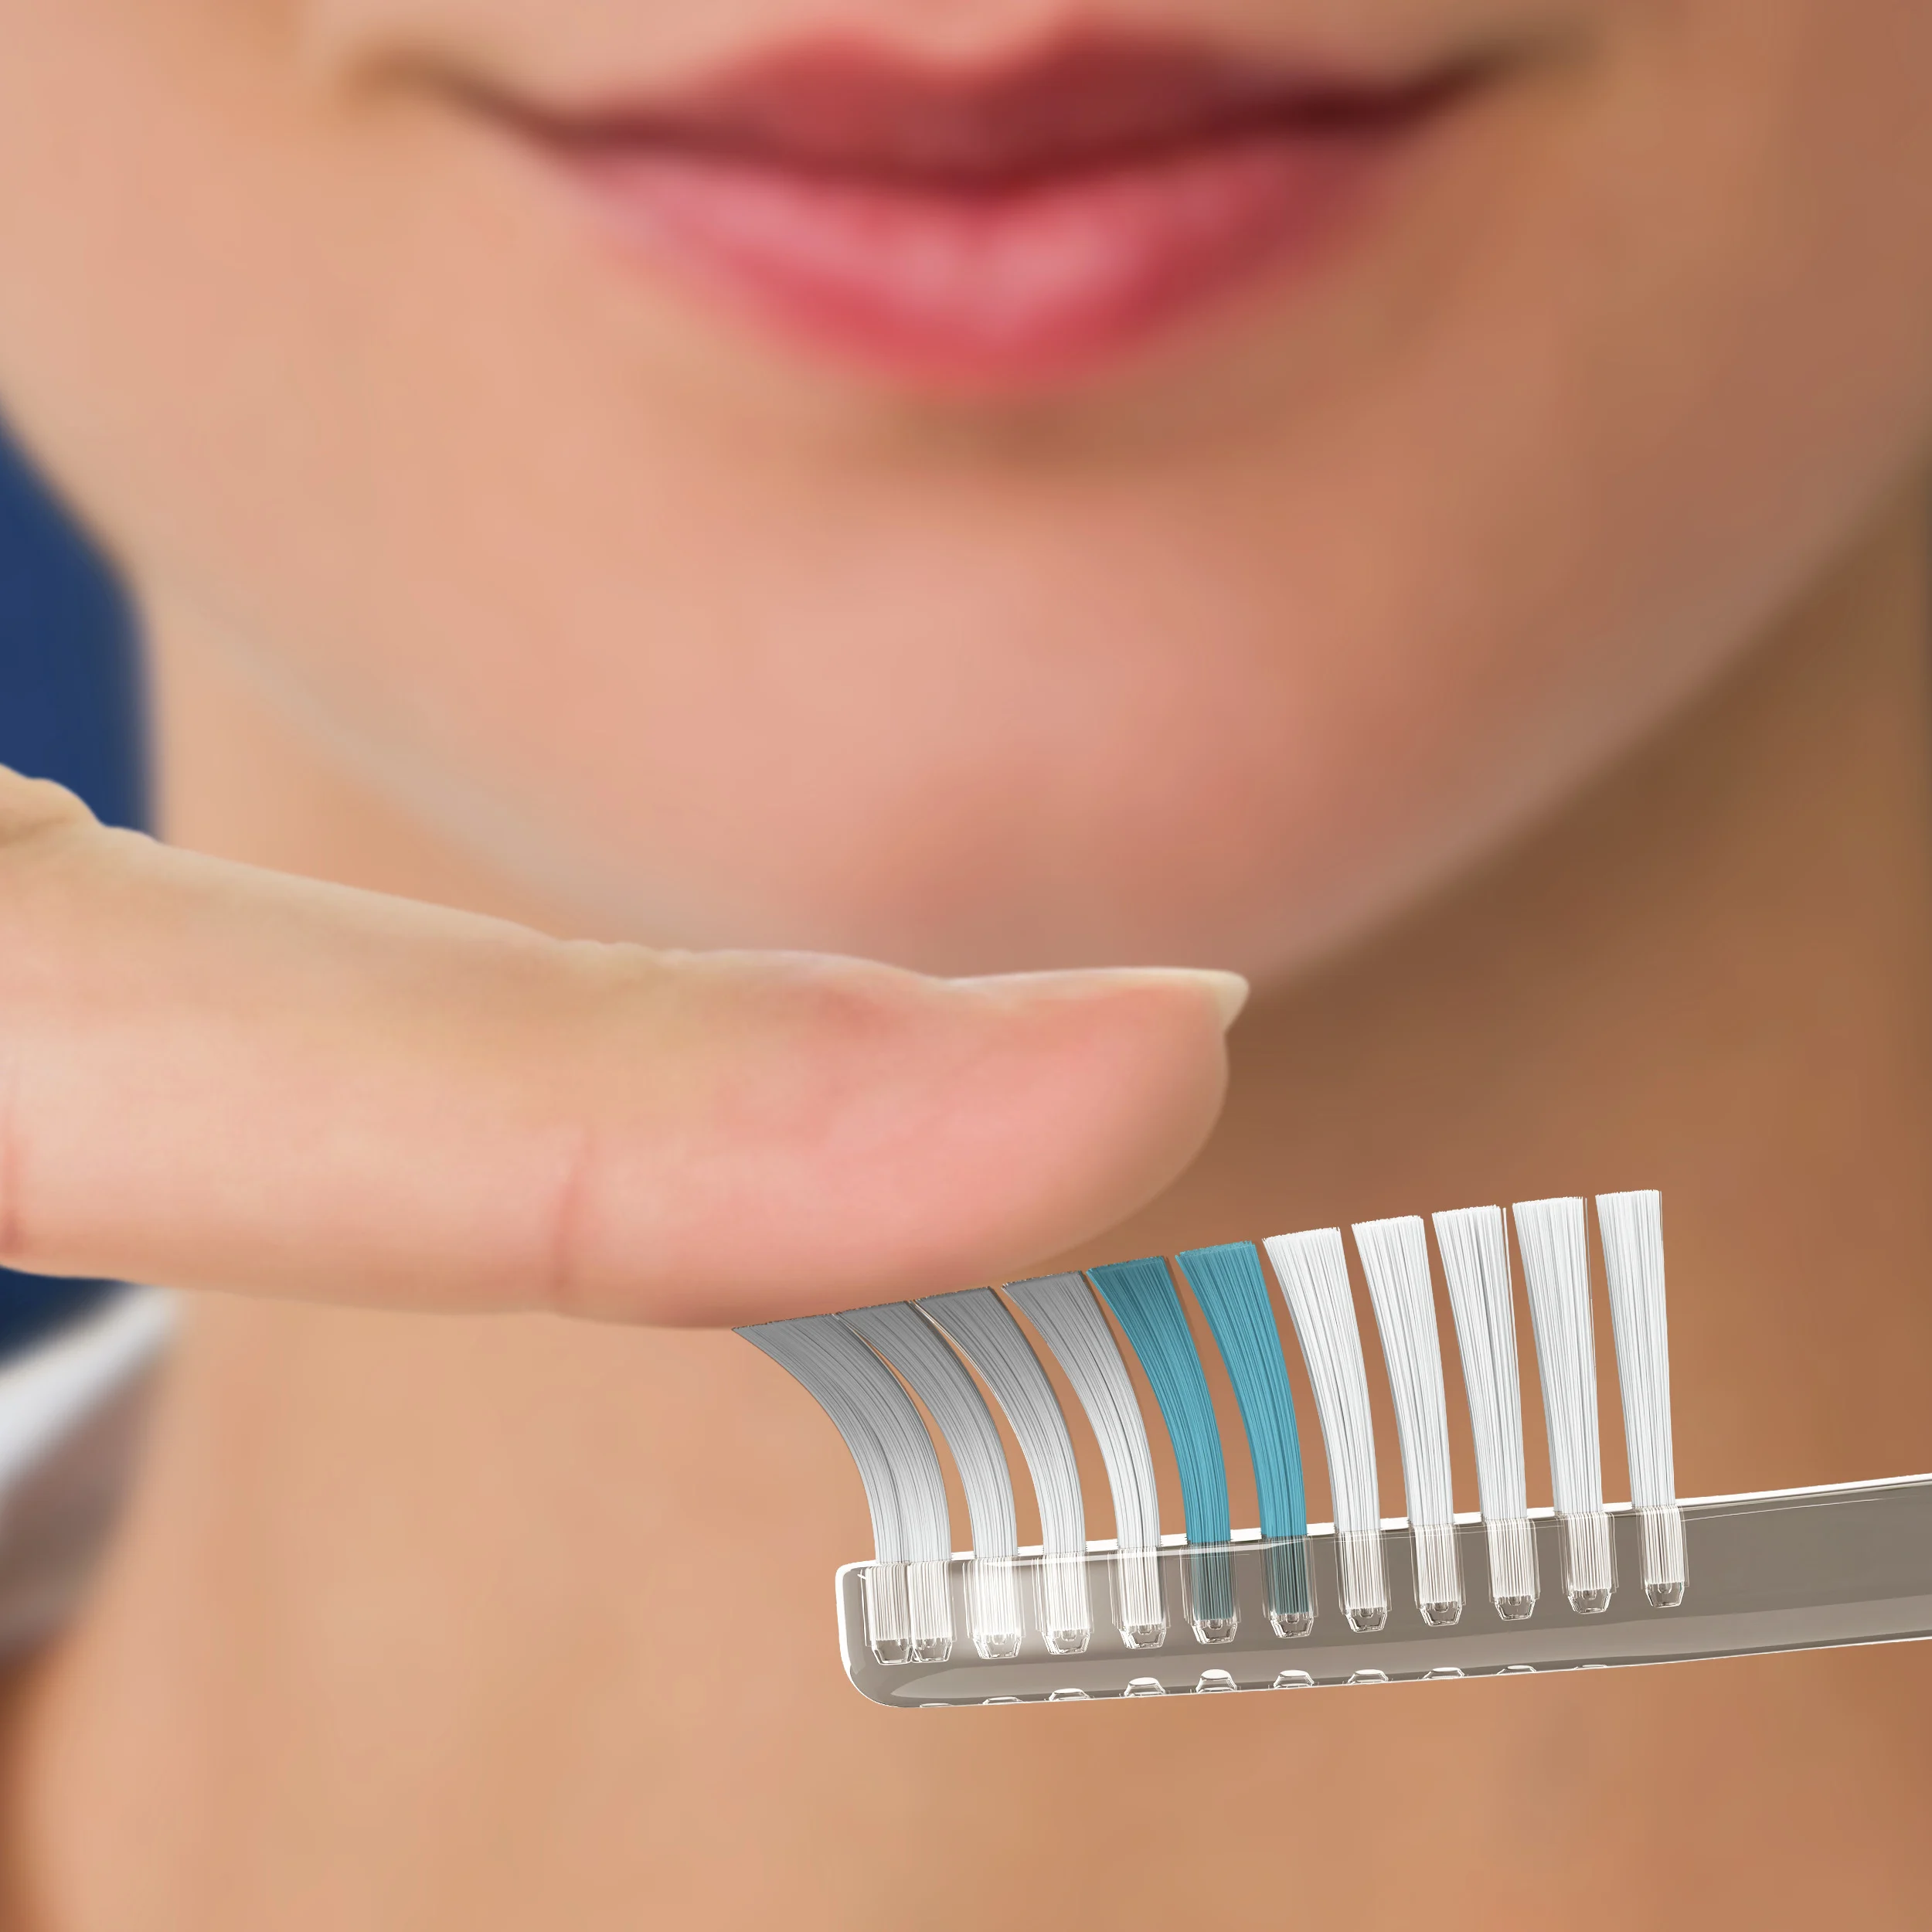 Cepillo dental Oral-B Clean Indicator Suave 1 pza